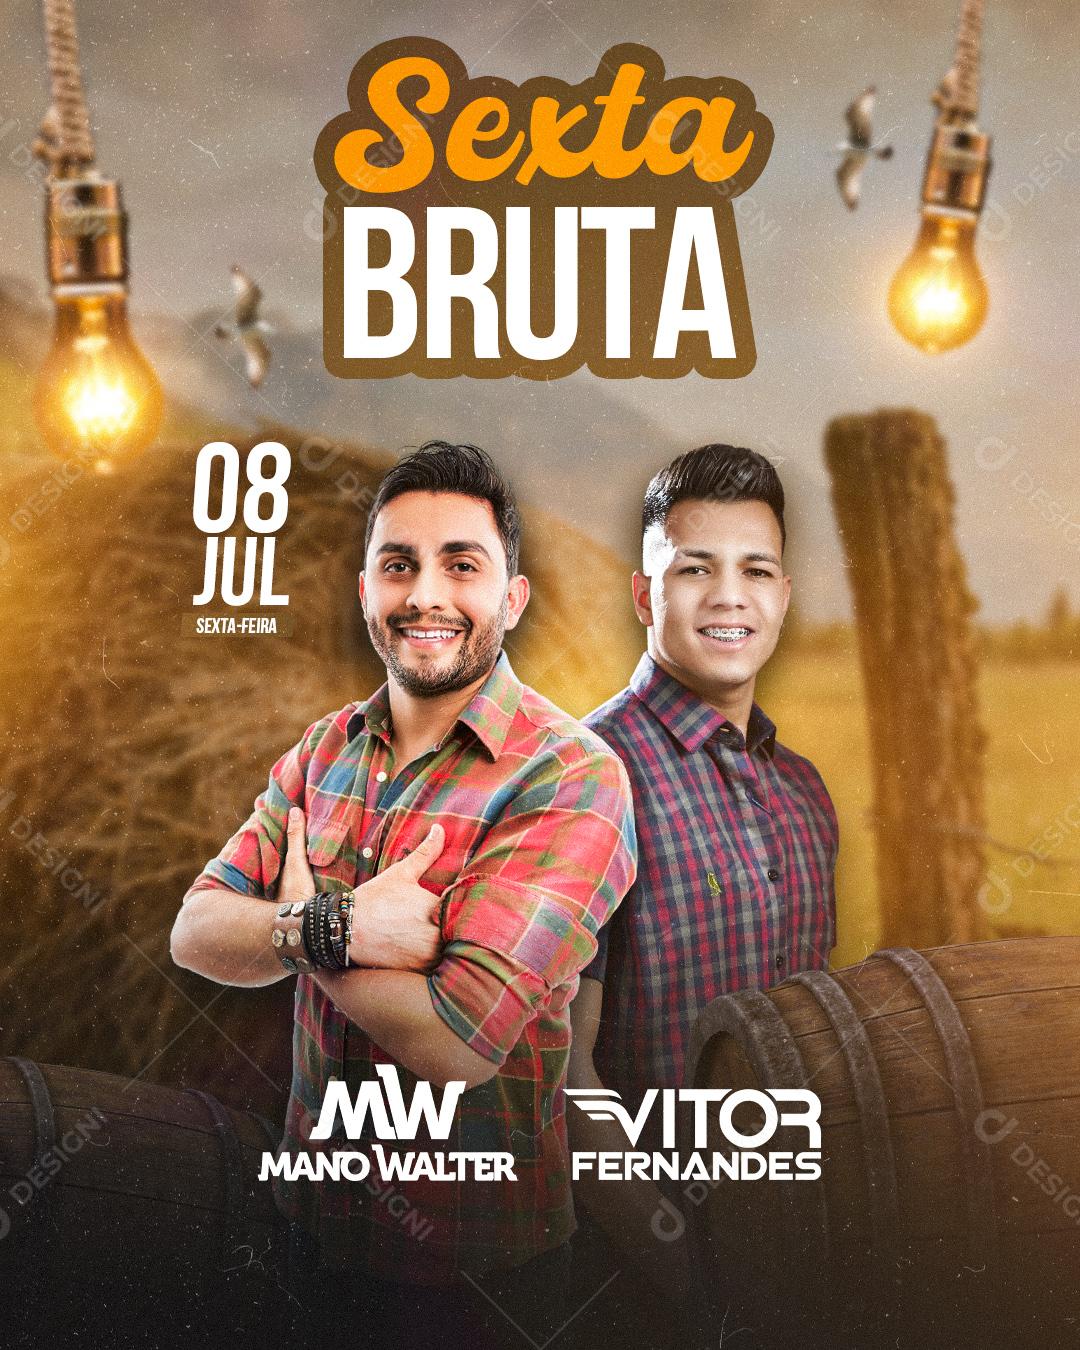 Flyer Sexta Bruta Show Mano Walter, Vitor Fernandes Social Media PSD Editável